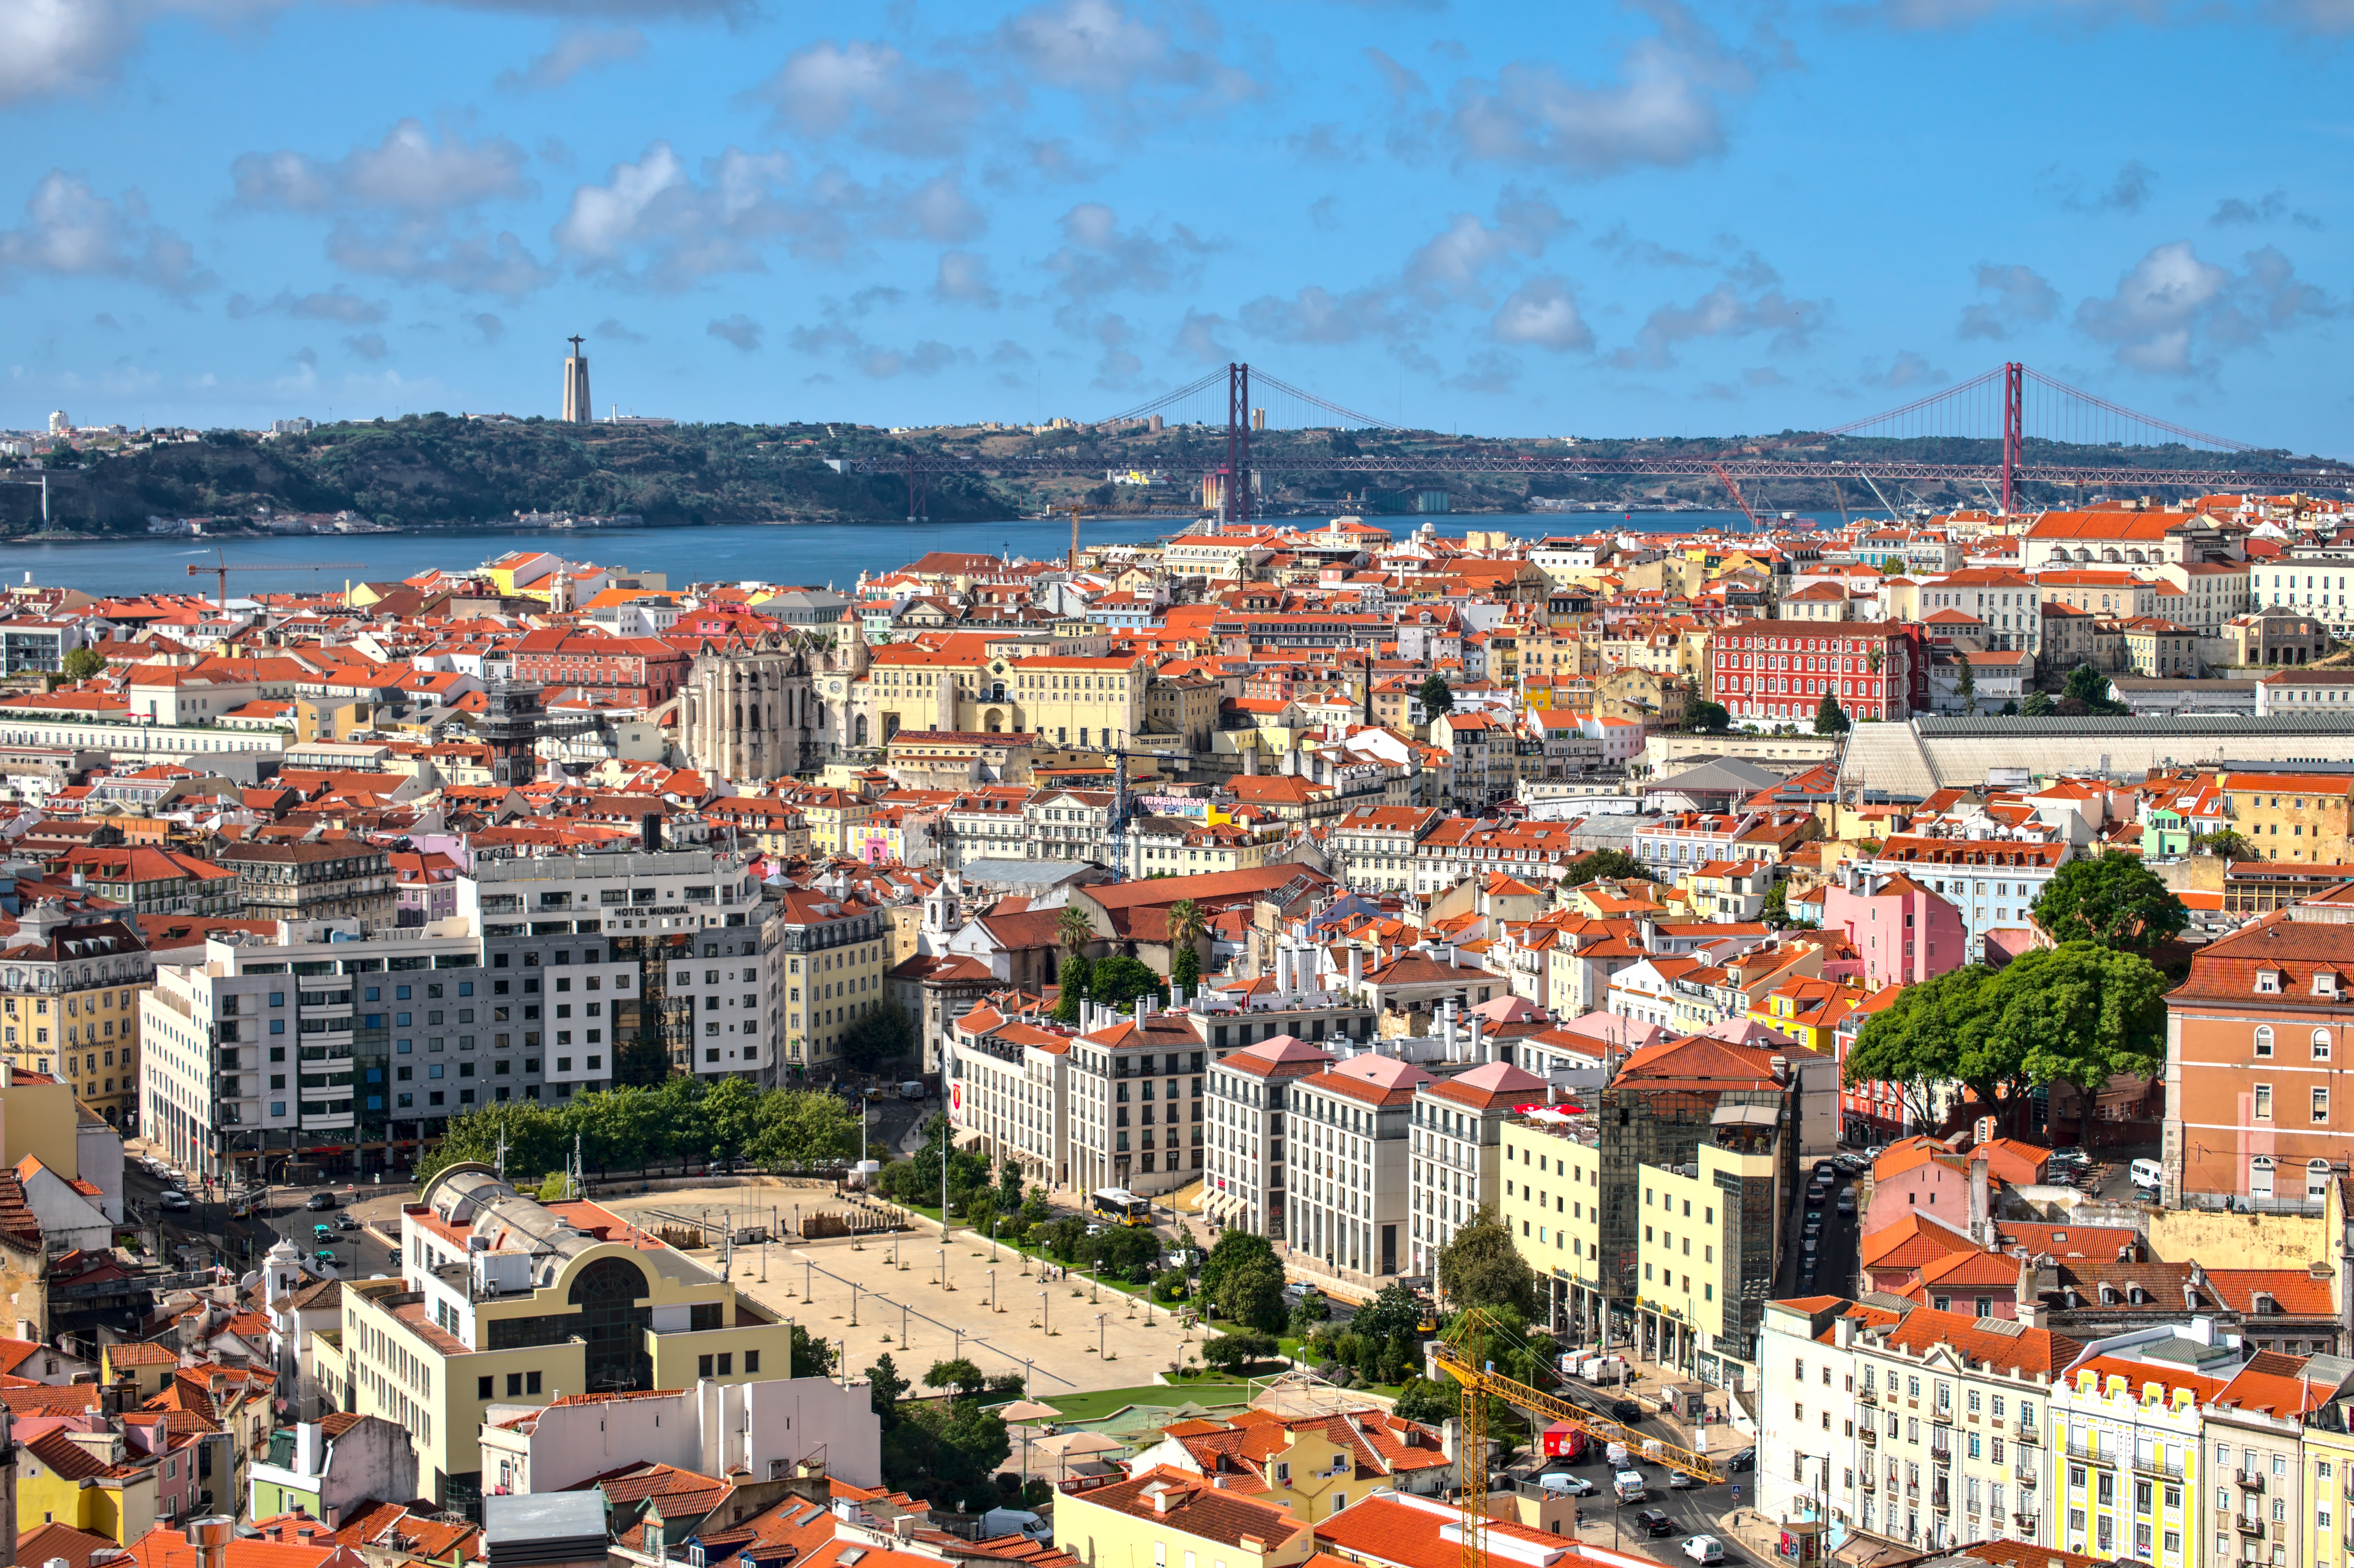 Популярные заставки и фоны Лиссабон на компьютер